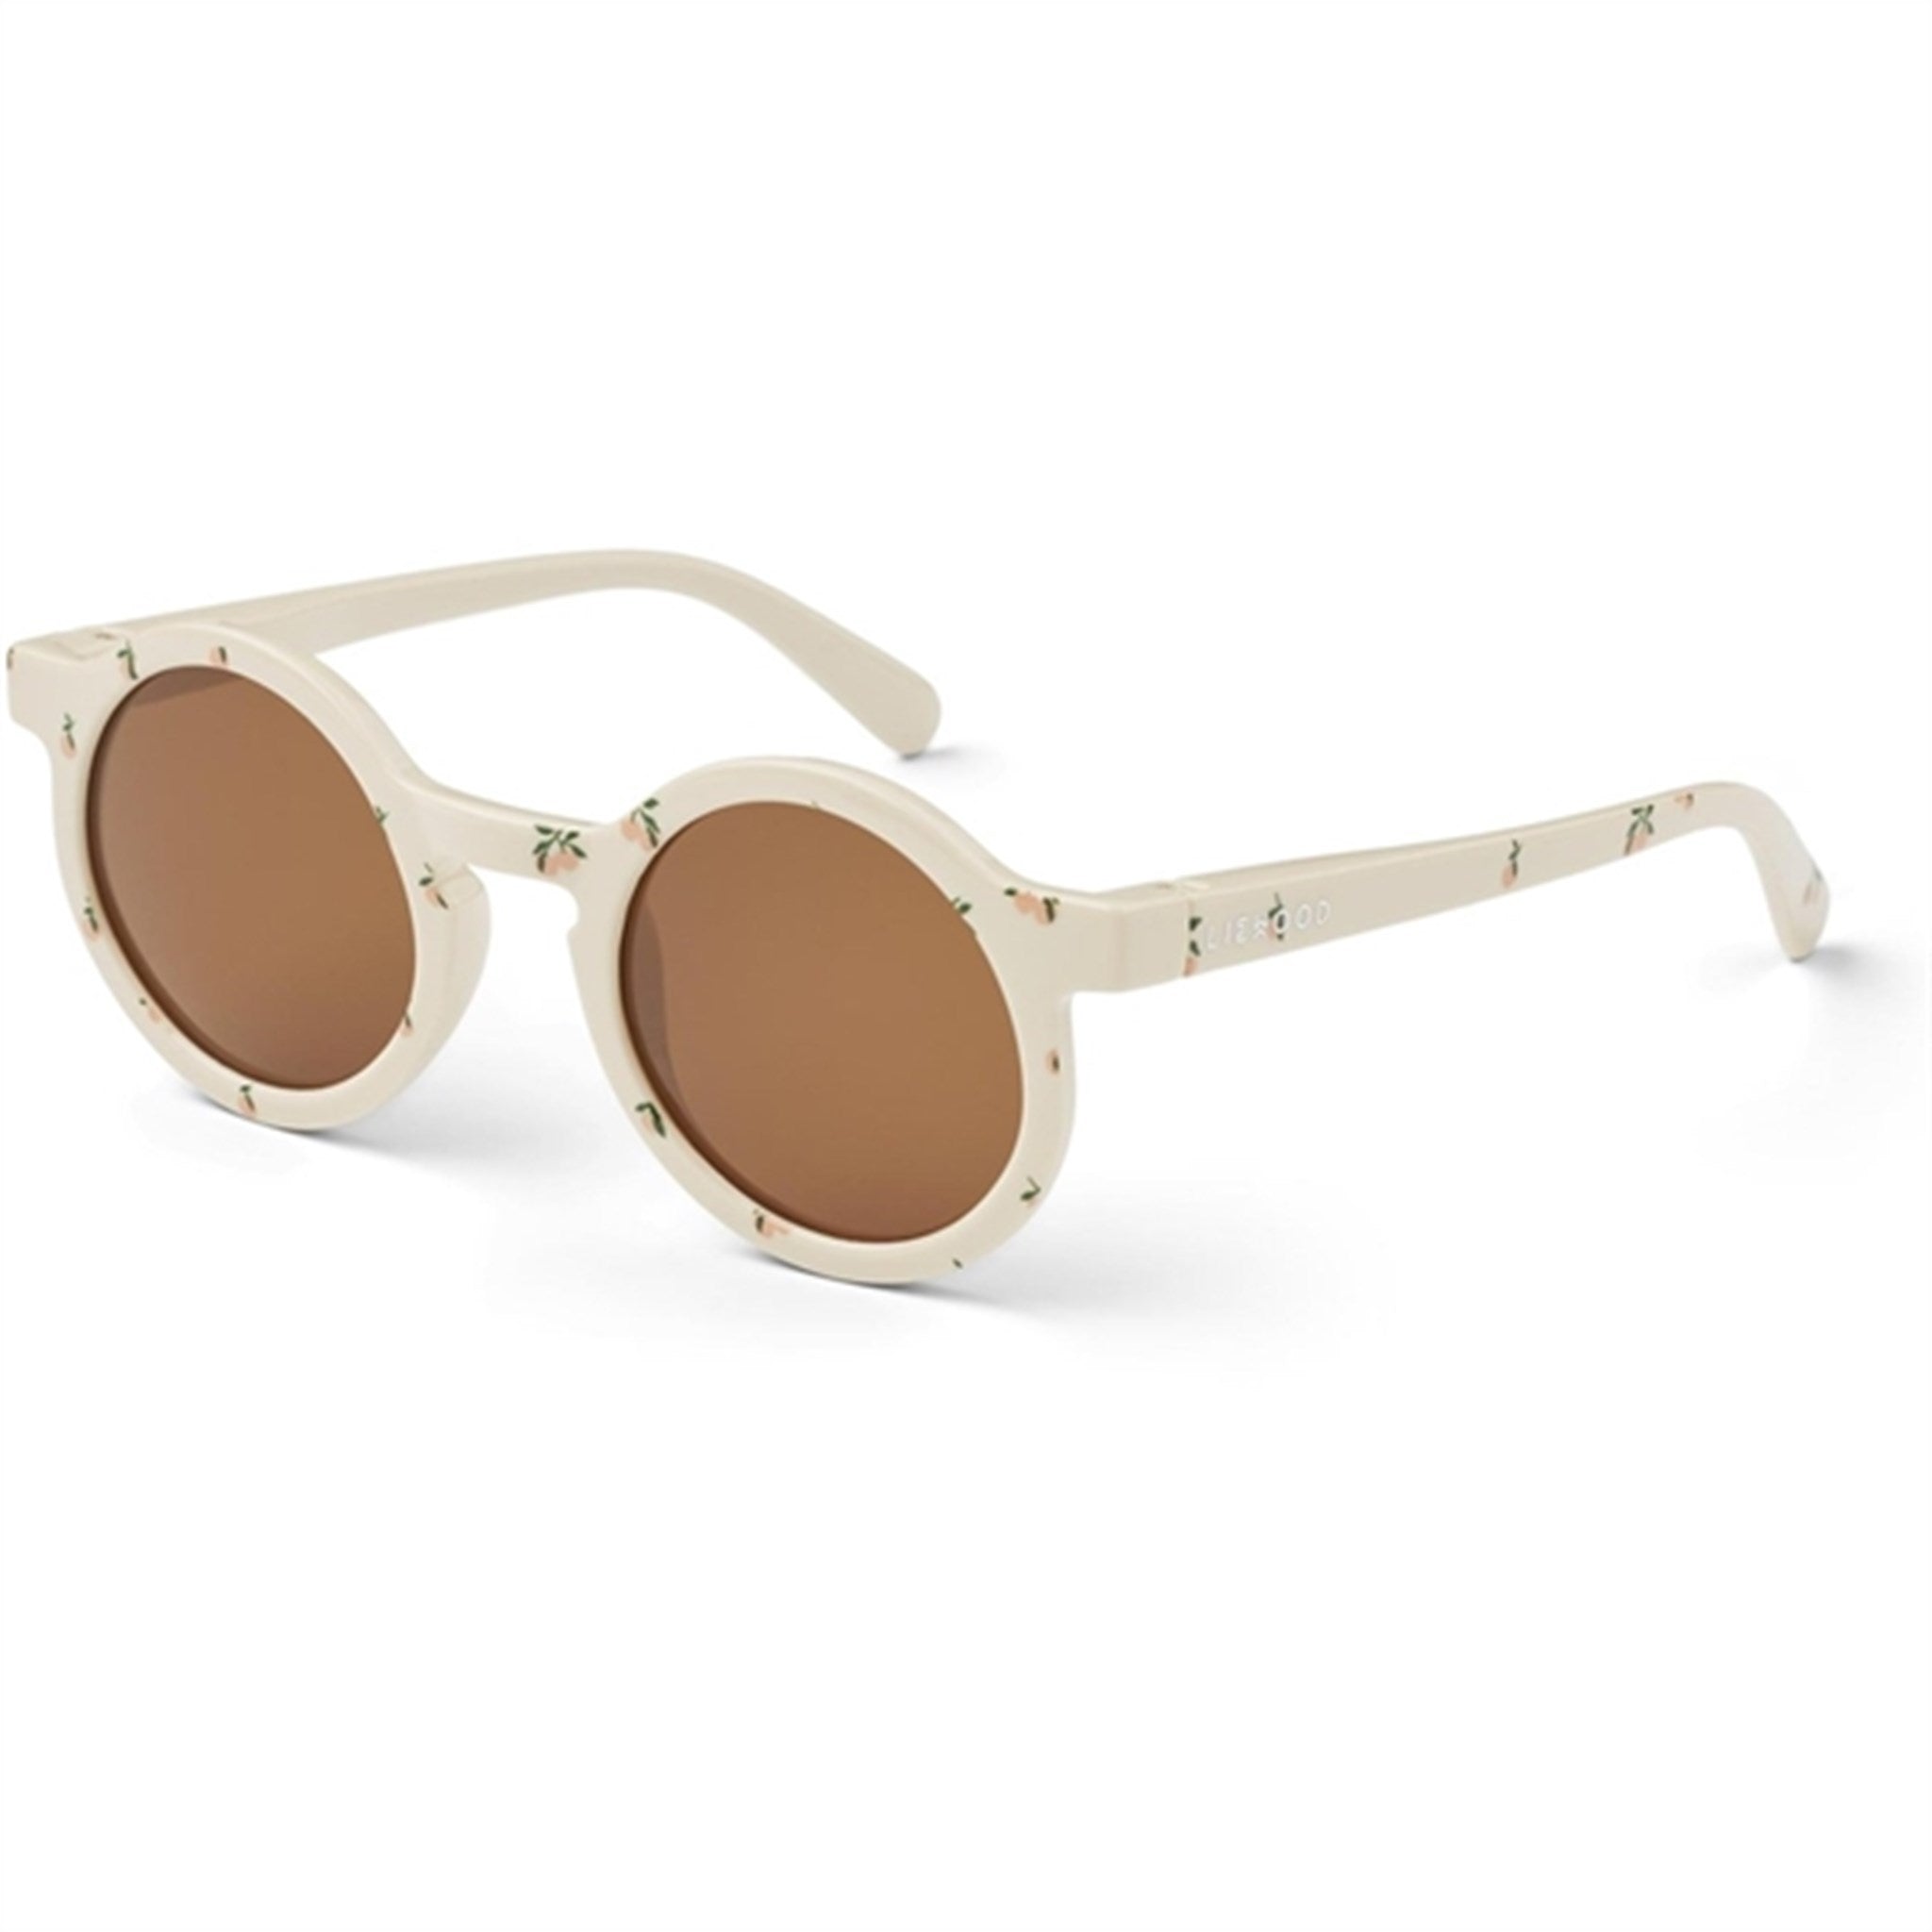 Liewood Darla Sunglasses 4 - 10 Y/O Peach Sea Shell